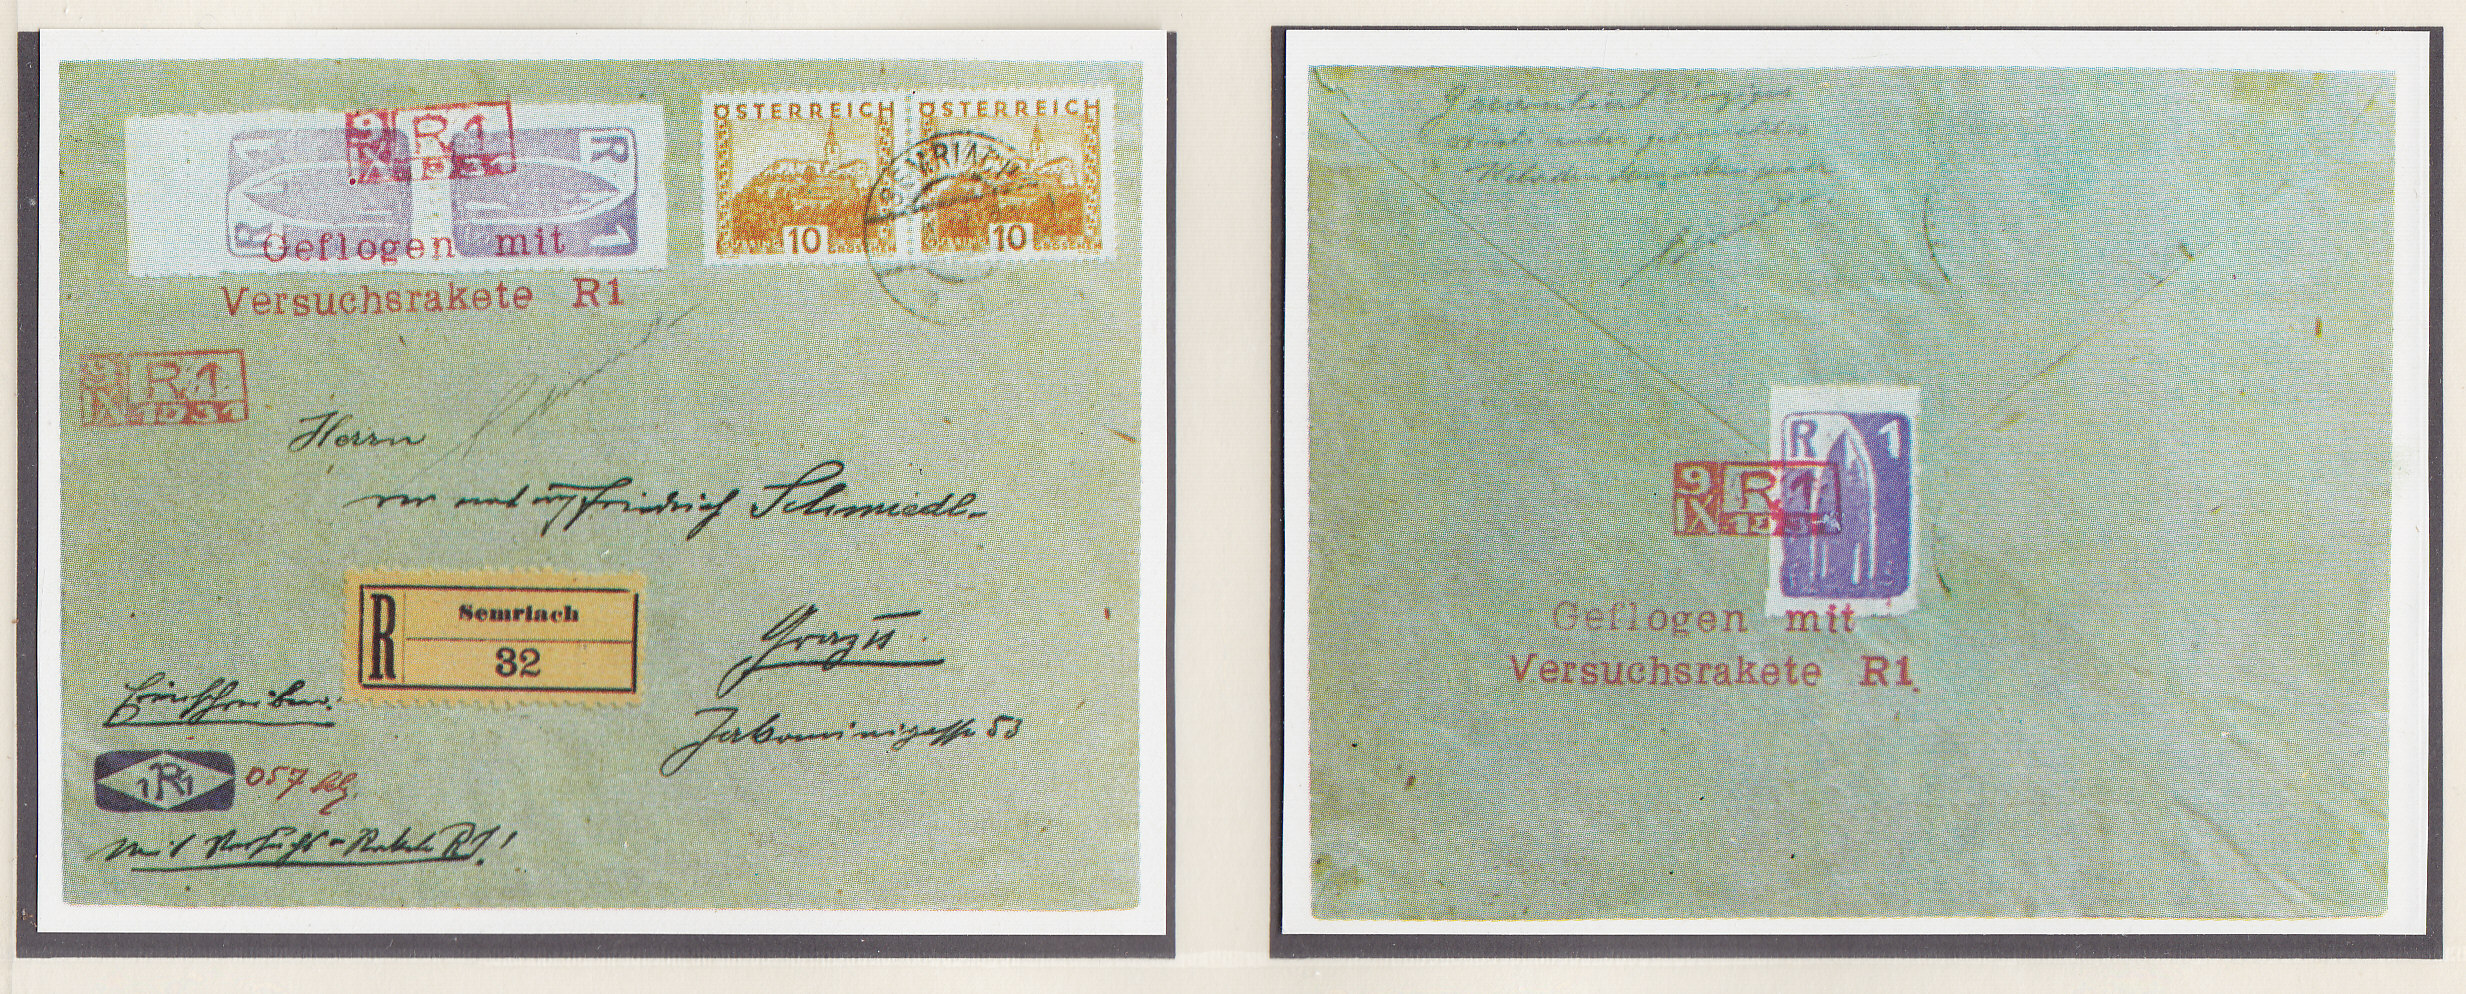 Австрия, 1988, Ракетная почта. Копия конверта 1931 года